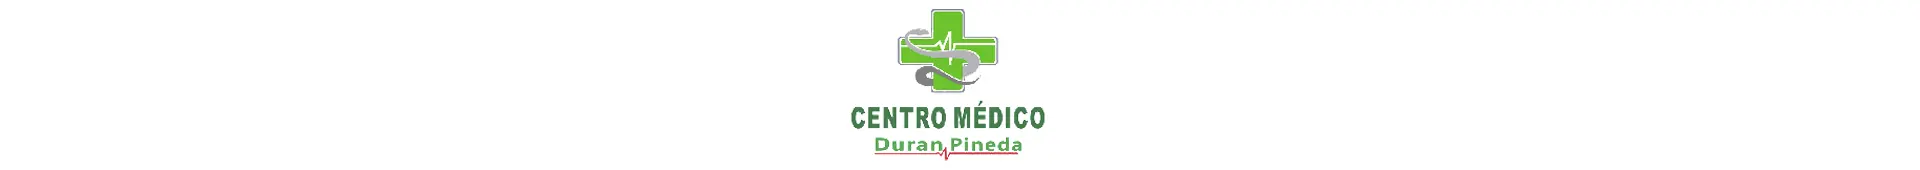 Imagen 1 del perfil de Centro Médico Duran Pineda